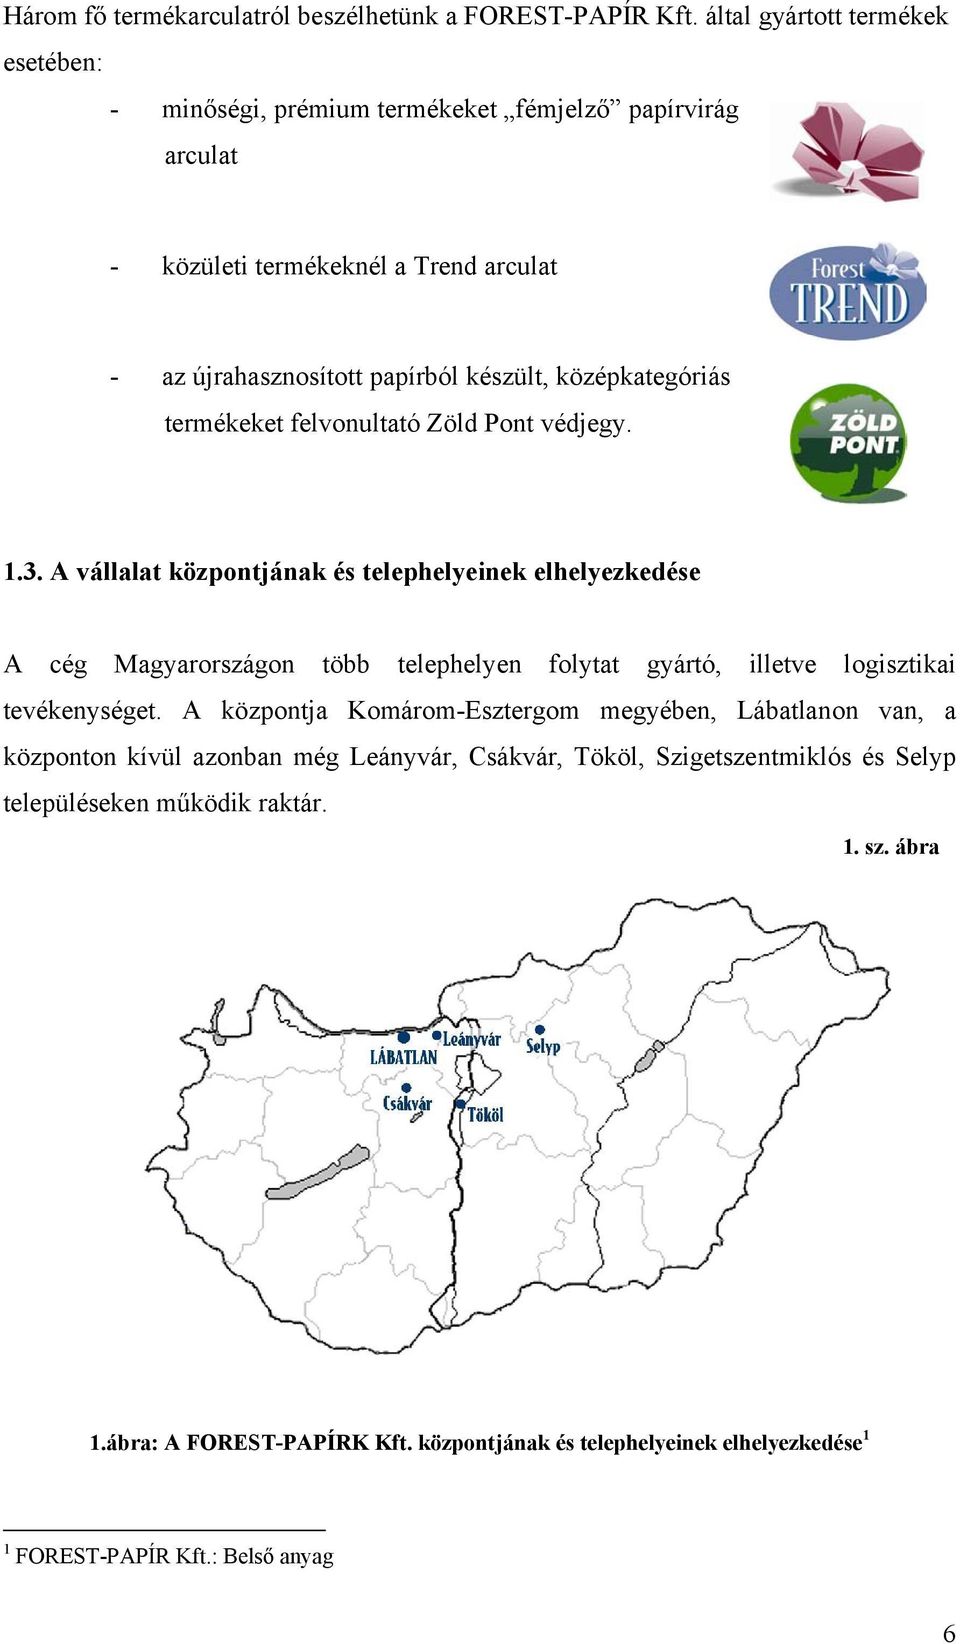 A FOREST-TREND KFT. BESZERZÉSI TEVÉKENYSÉGÉNEK VIZSGÁLATA - PDF Free  Download